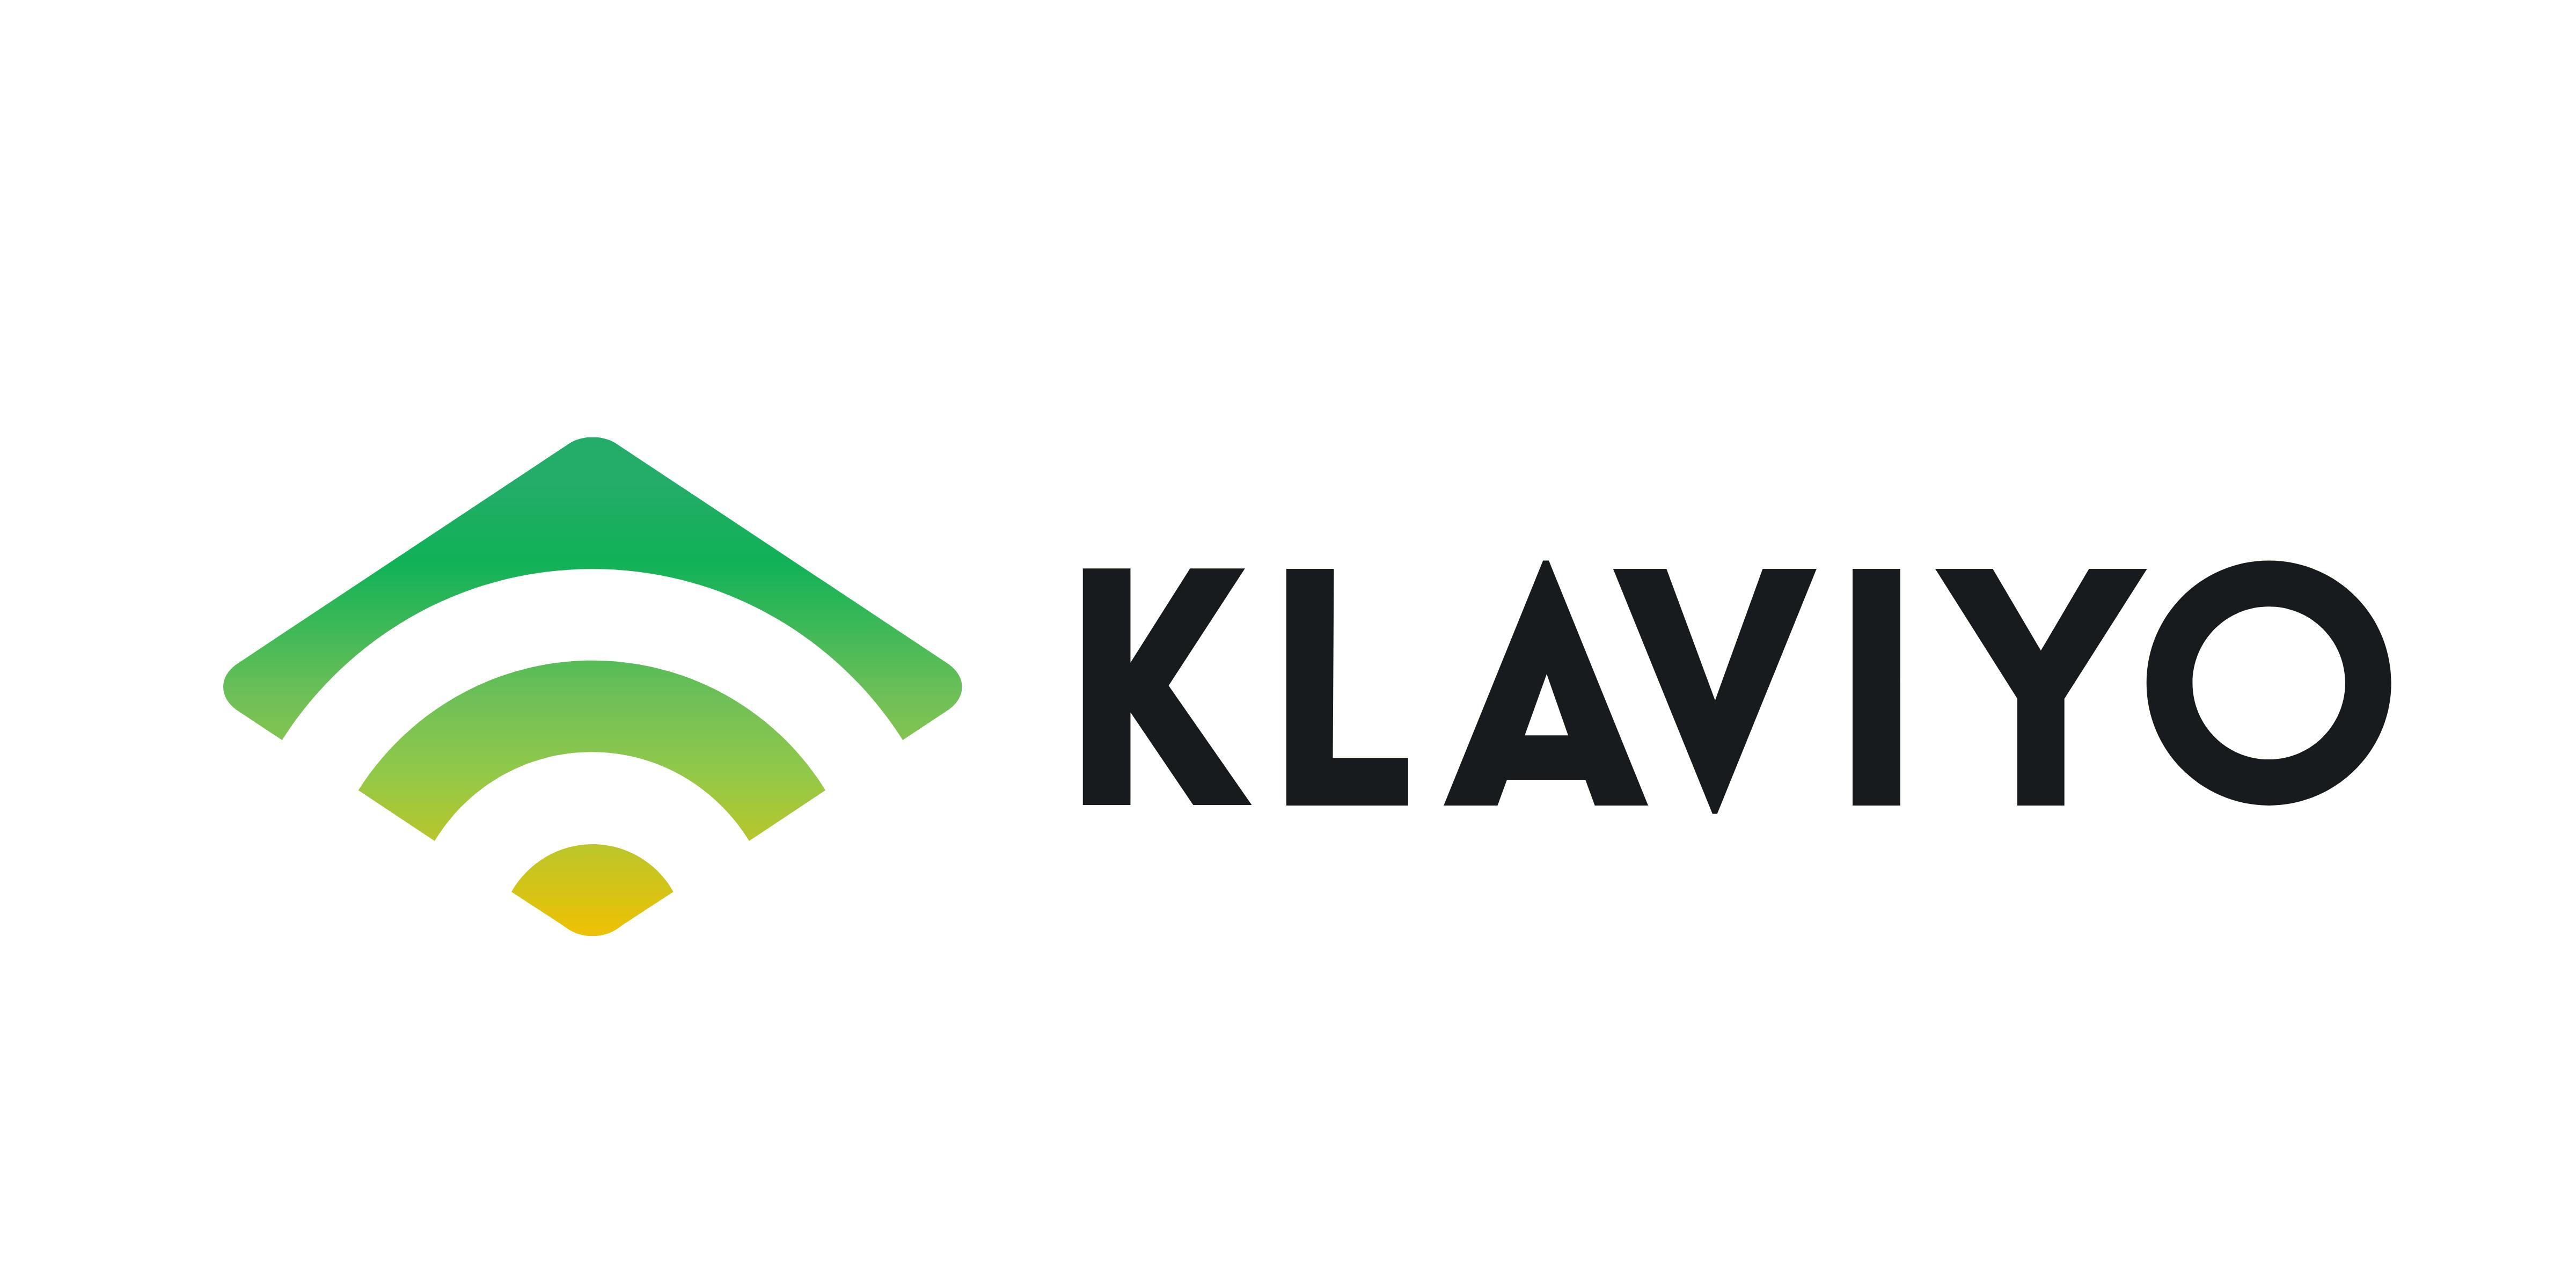 The Klaviyo logo is shown